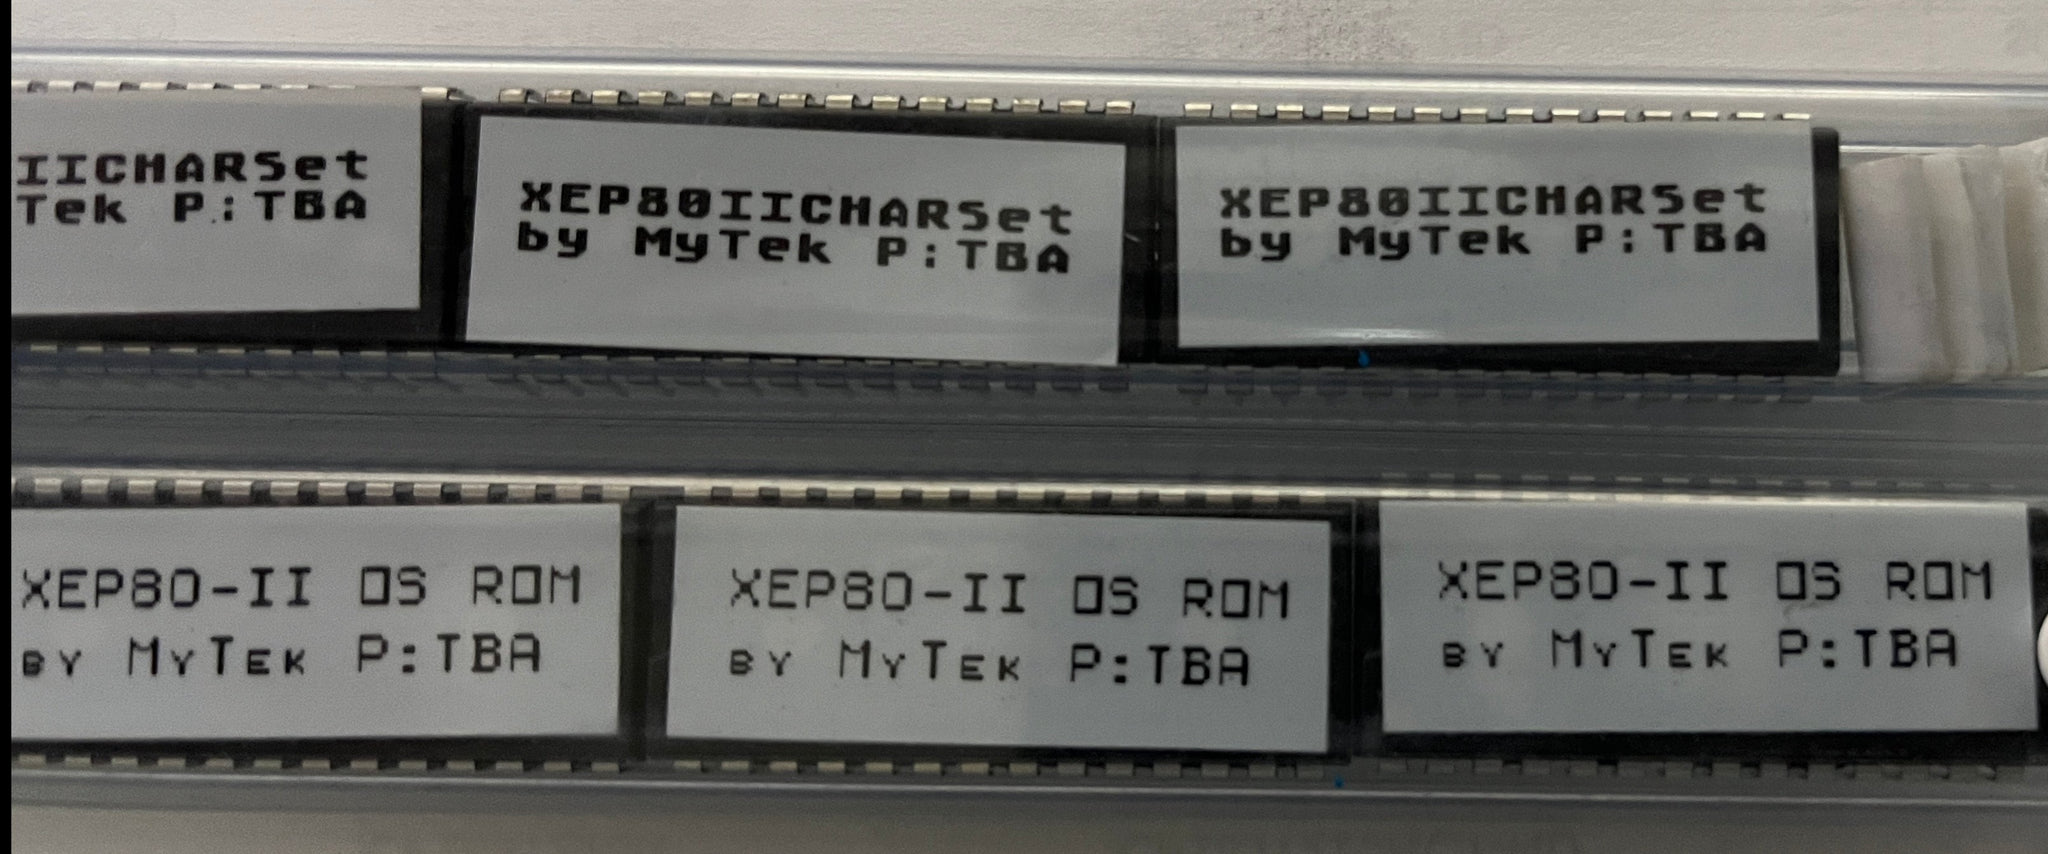 Programmierte Chips für XEP80II